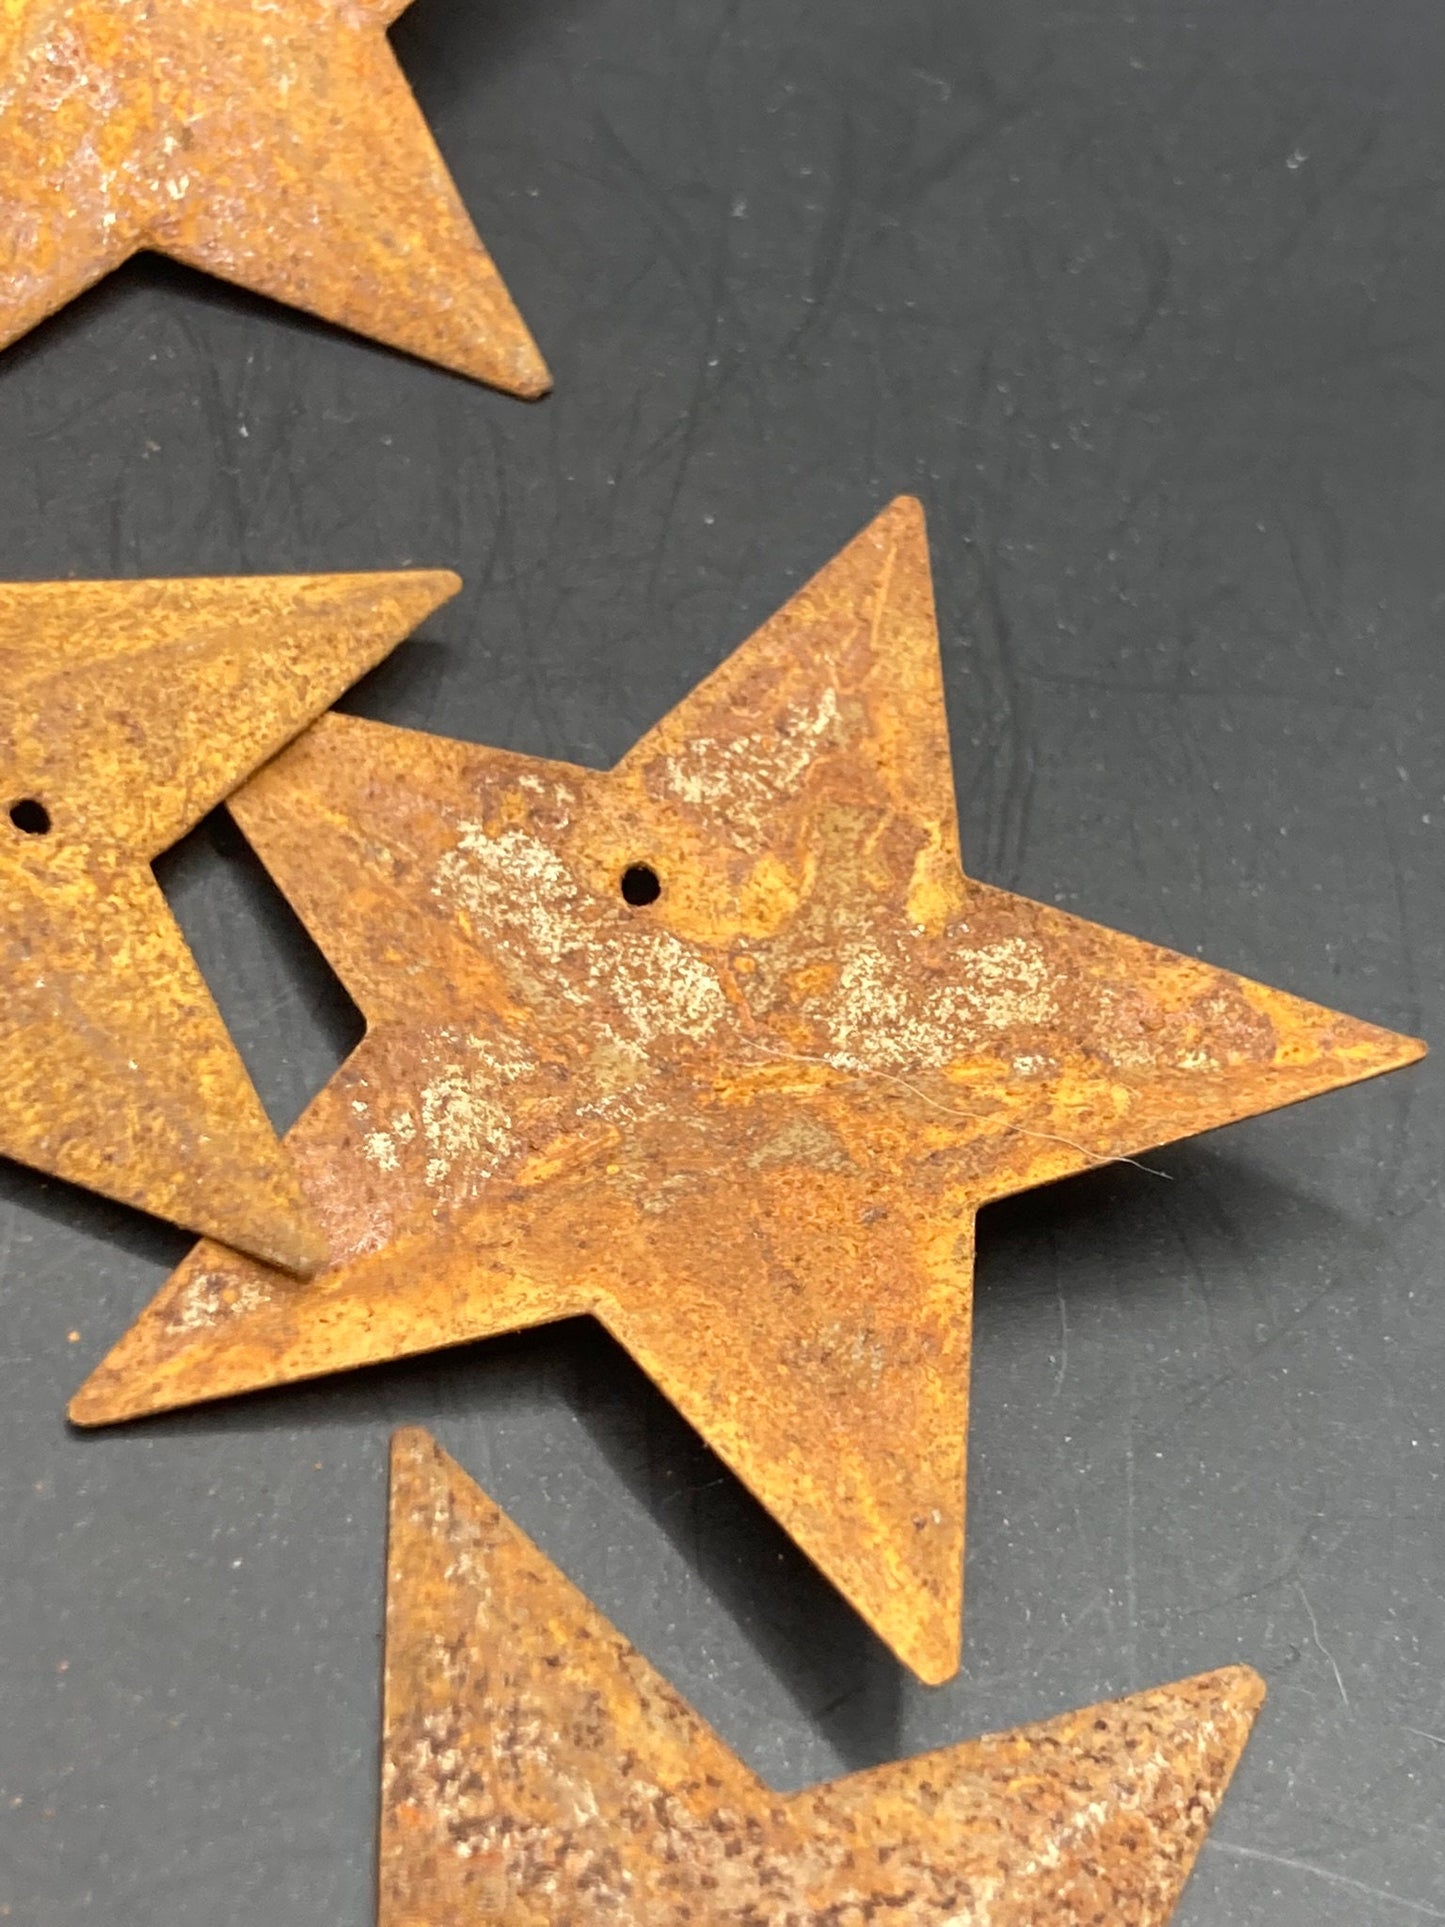 Set of 10 x 4.5cm rusty metal rustic embossed pressed metal STARS craft